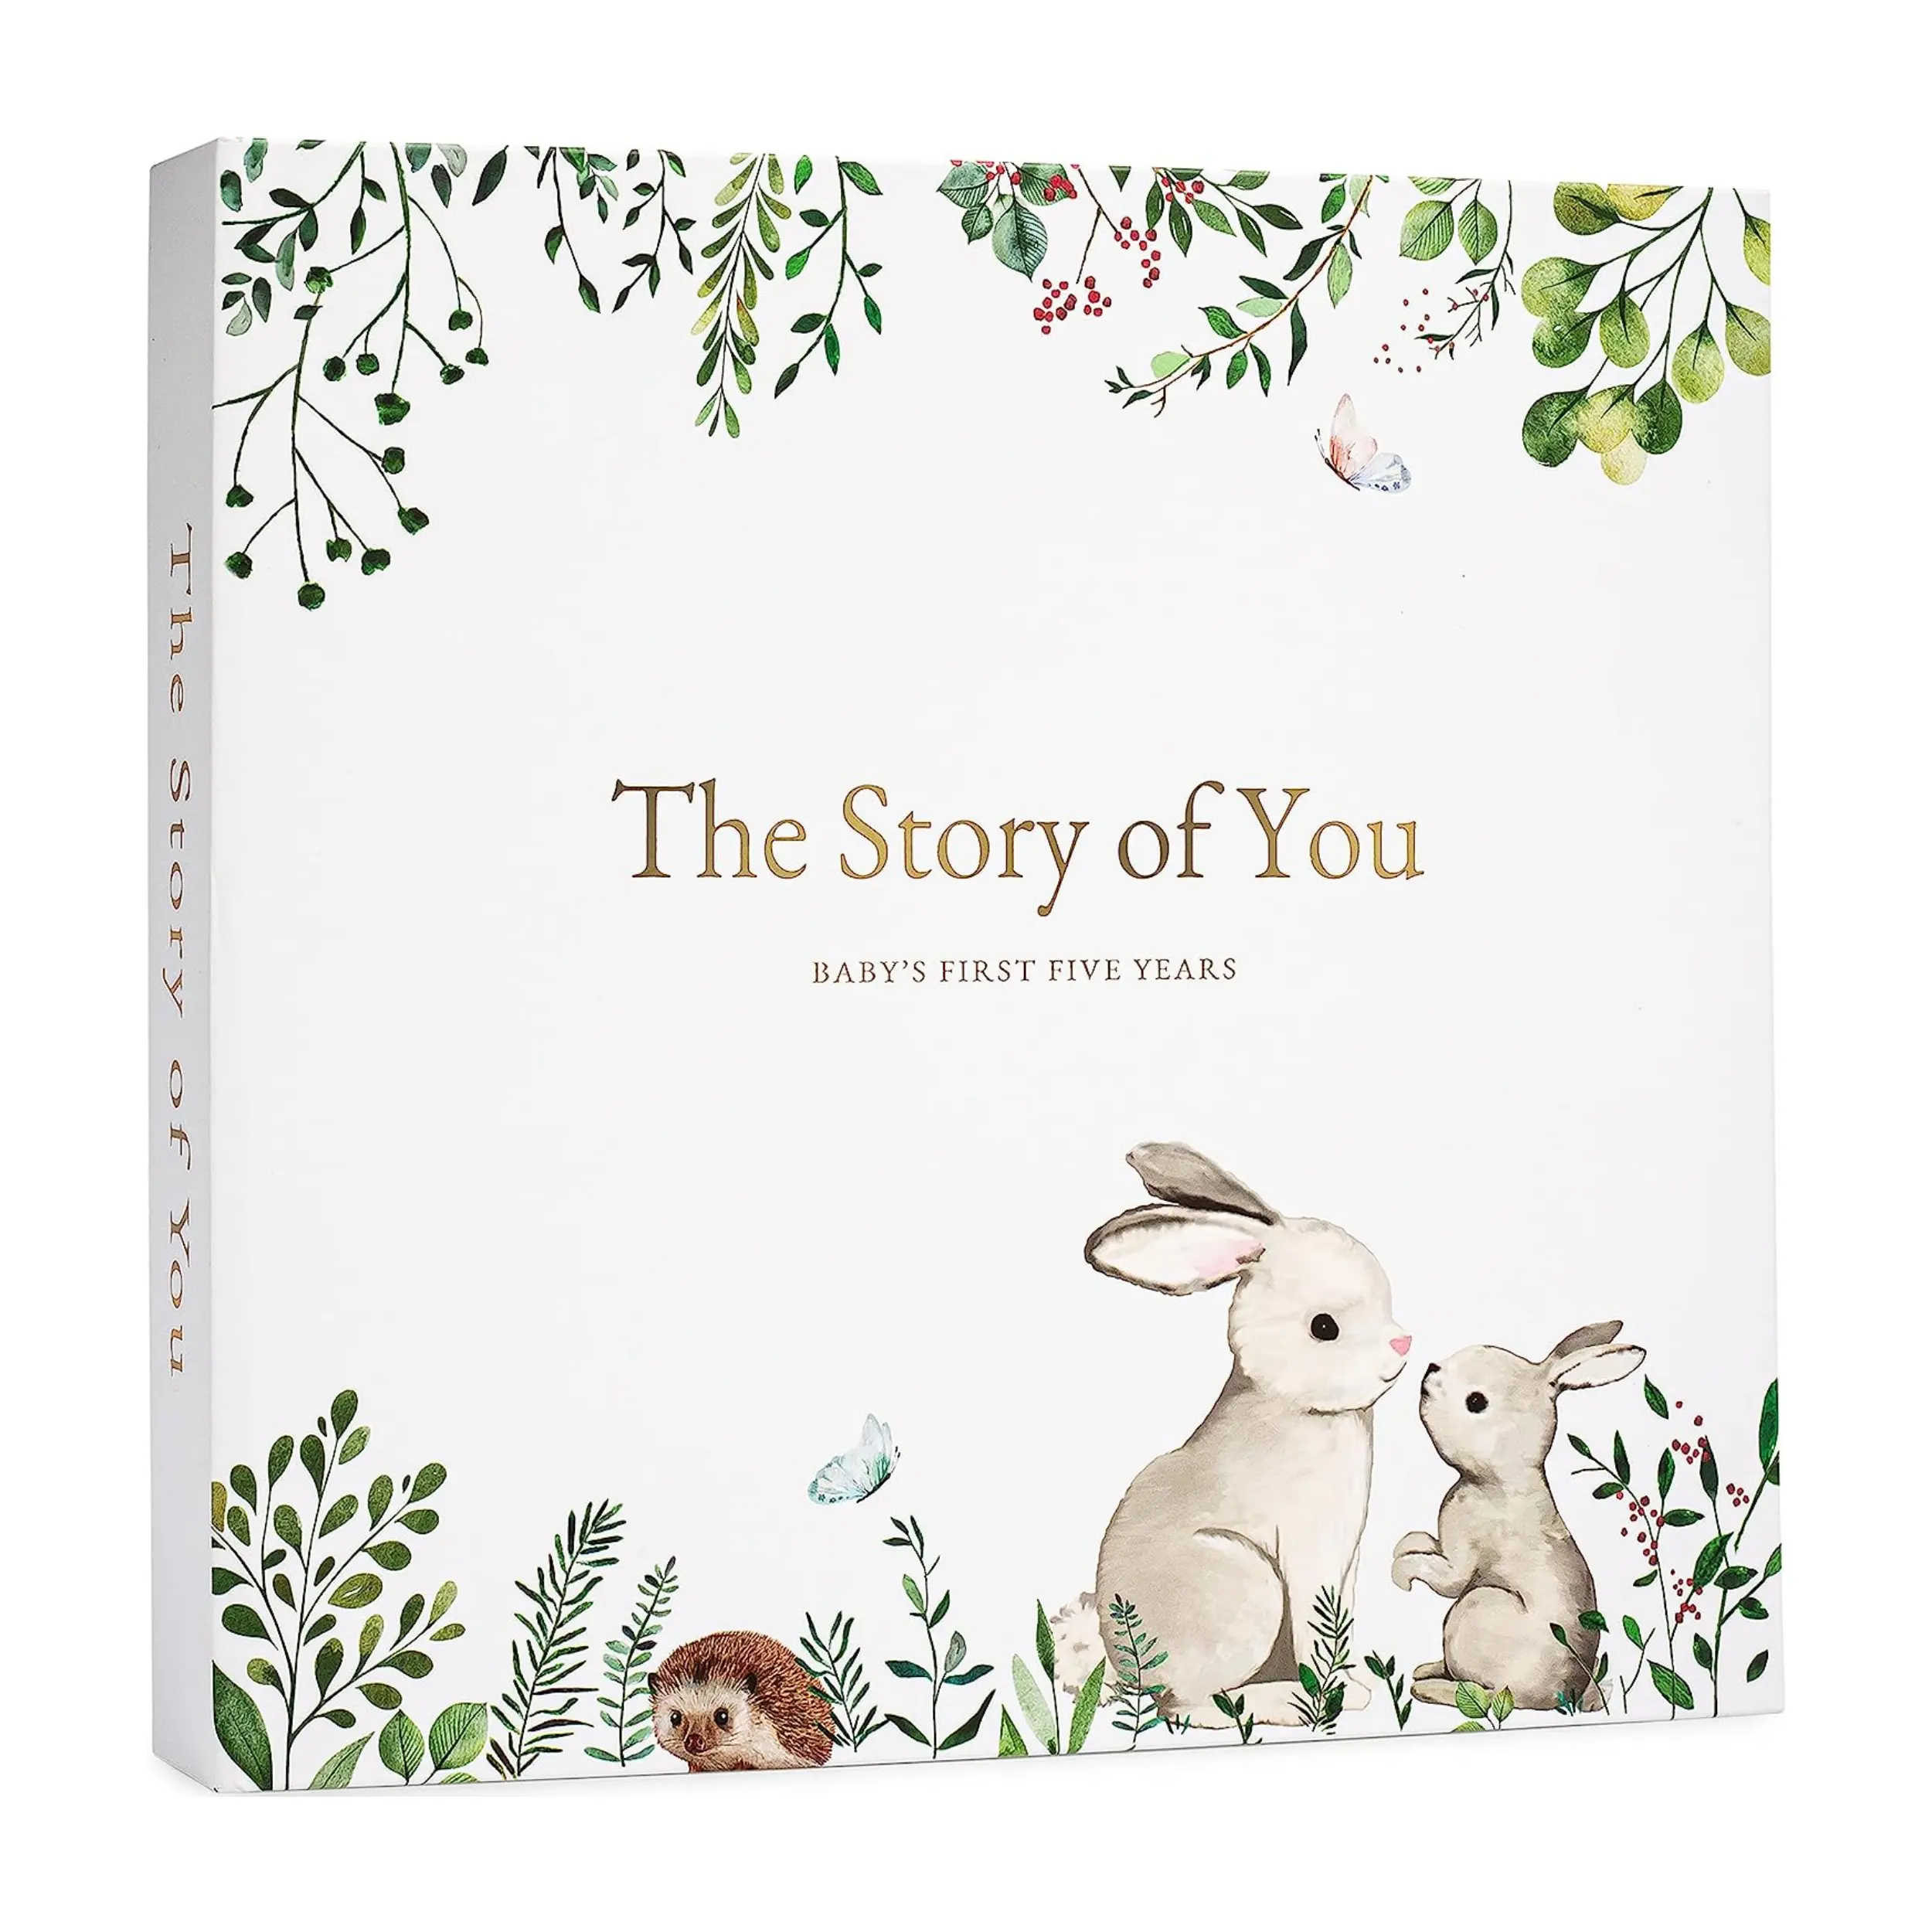 كتب للأطفال مخصصة كتاب ذاكرة للسنة الأولى بغلاف مقوى مذكرة طفل كتاب ذاكرة ألبوم صور حلزوني مخطط طفل